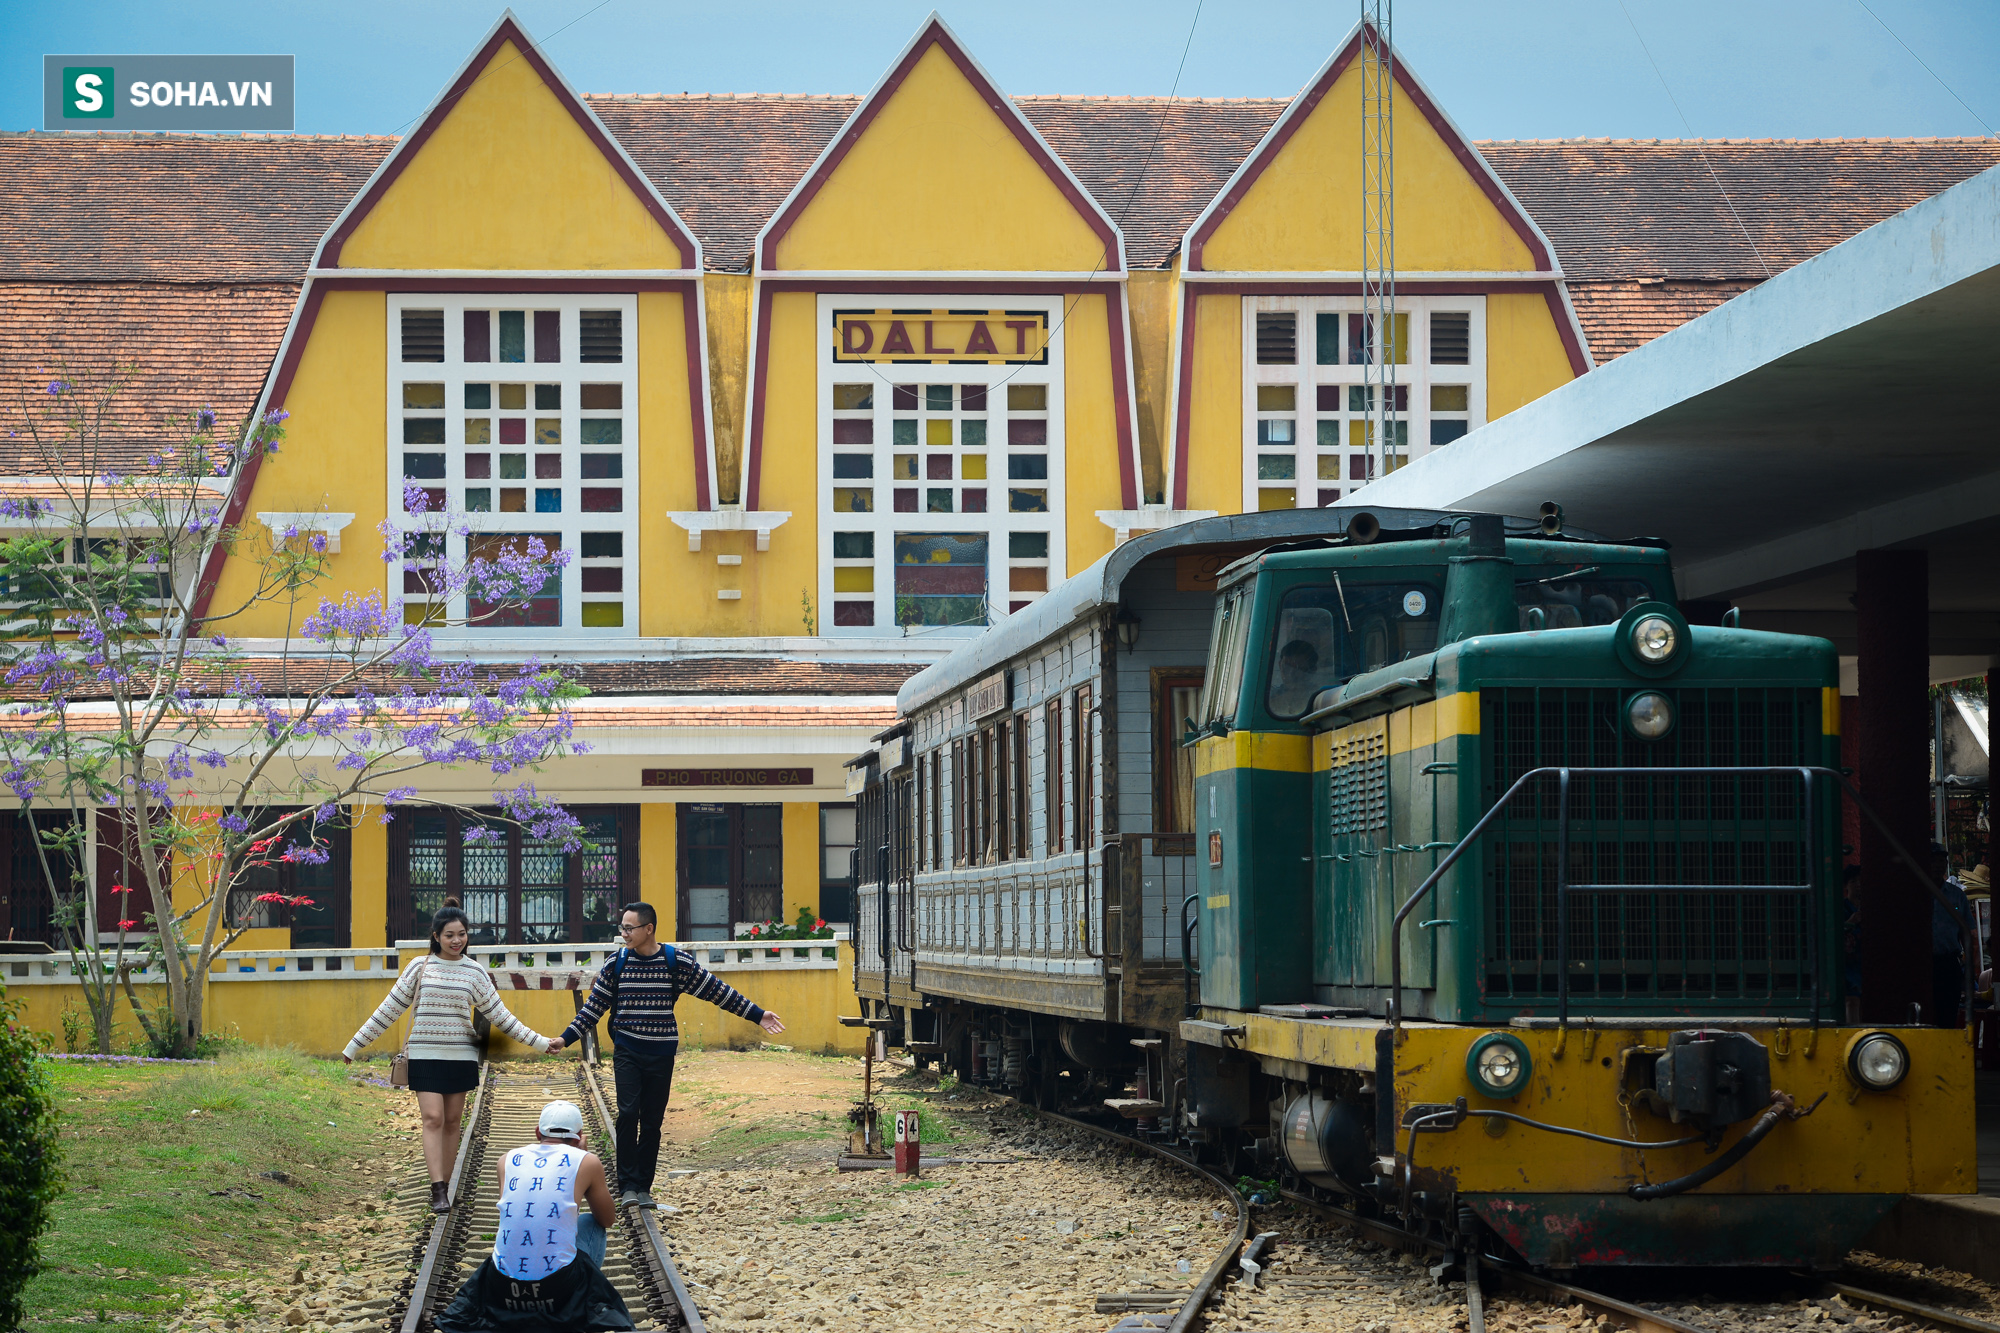 [ẢNH] Những đoàn tàu trăm tuổi vang bóng một thời tại nhà ga đường sắt cao nhất Việt Nam - Ảnh 5.